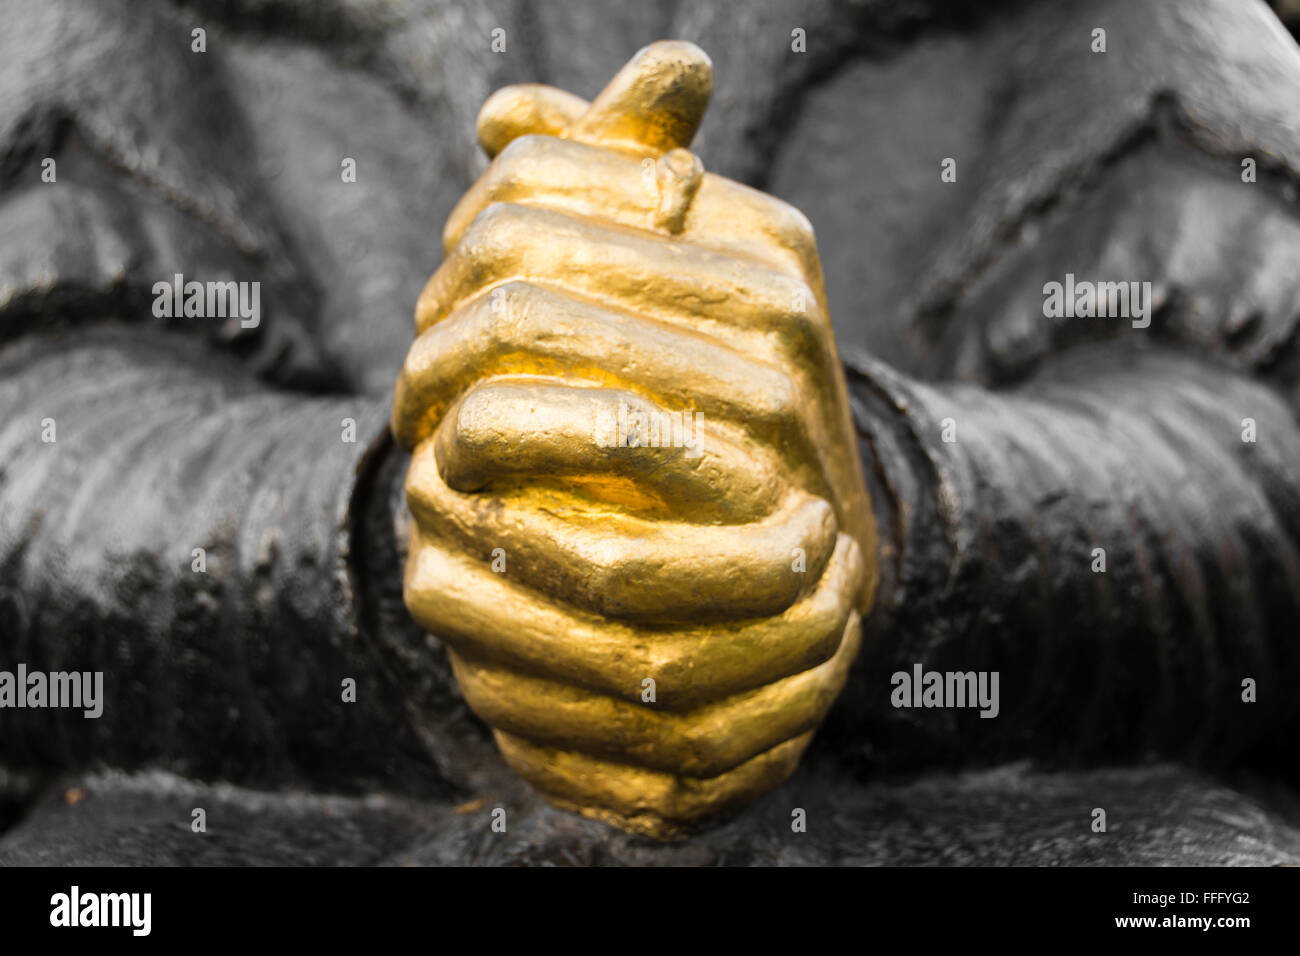 Les mains jointes en prière sur le Sir Thomas Moore statue, Cheyne Walk, Chelsea, Londres, Angleterre, Royaume-Uni, Banque D'Images